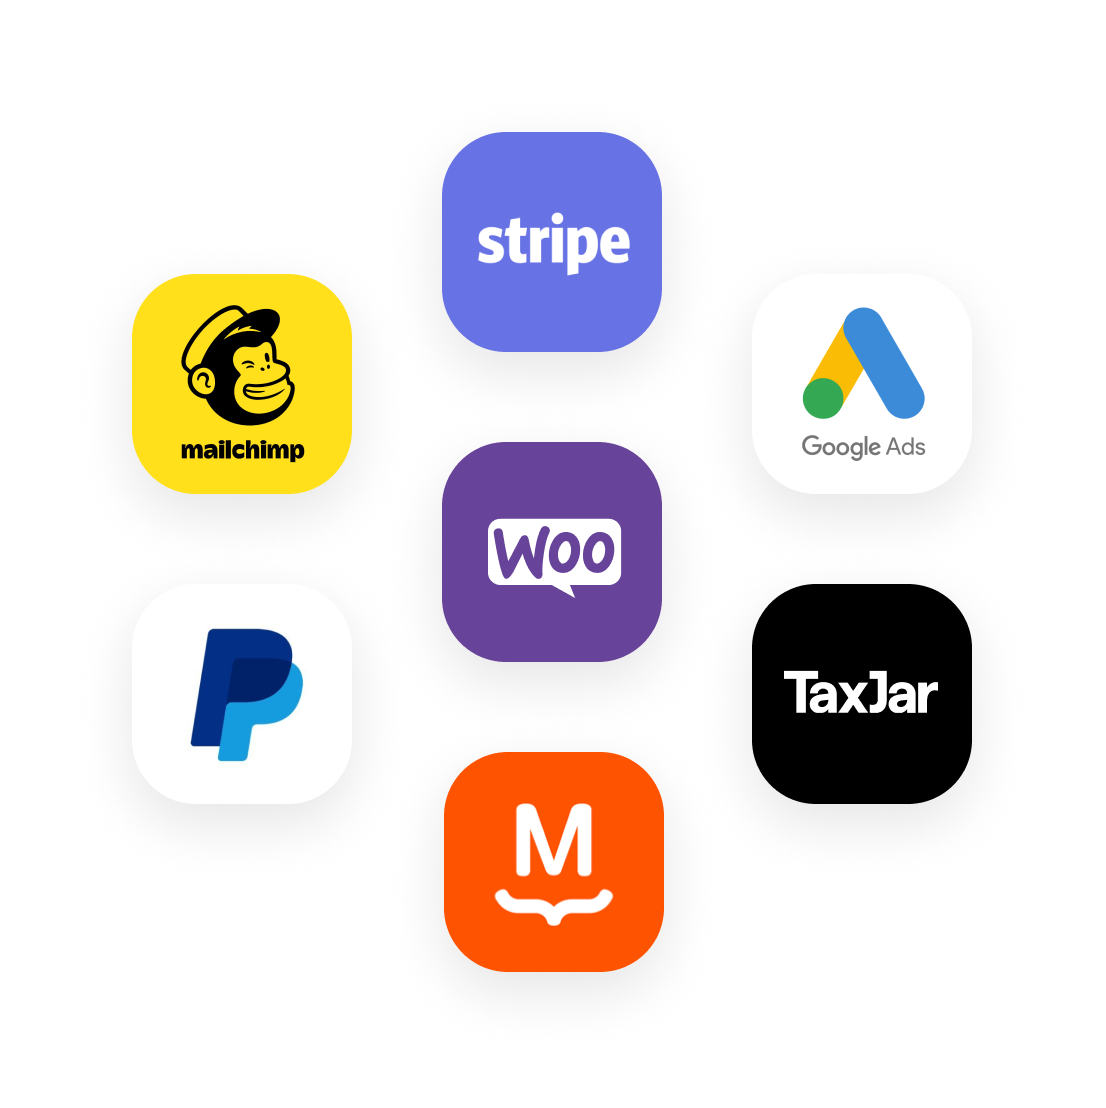 Logo dla wybranych produktów kompatybilnych z WooCommerce: Stripe, Google Ads, TaxJar, MailChimp, PayPal i MailPoet.